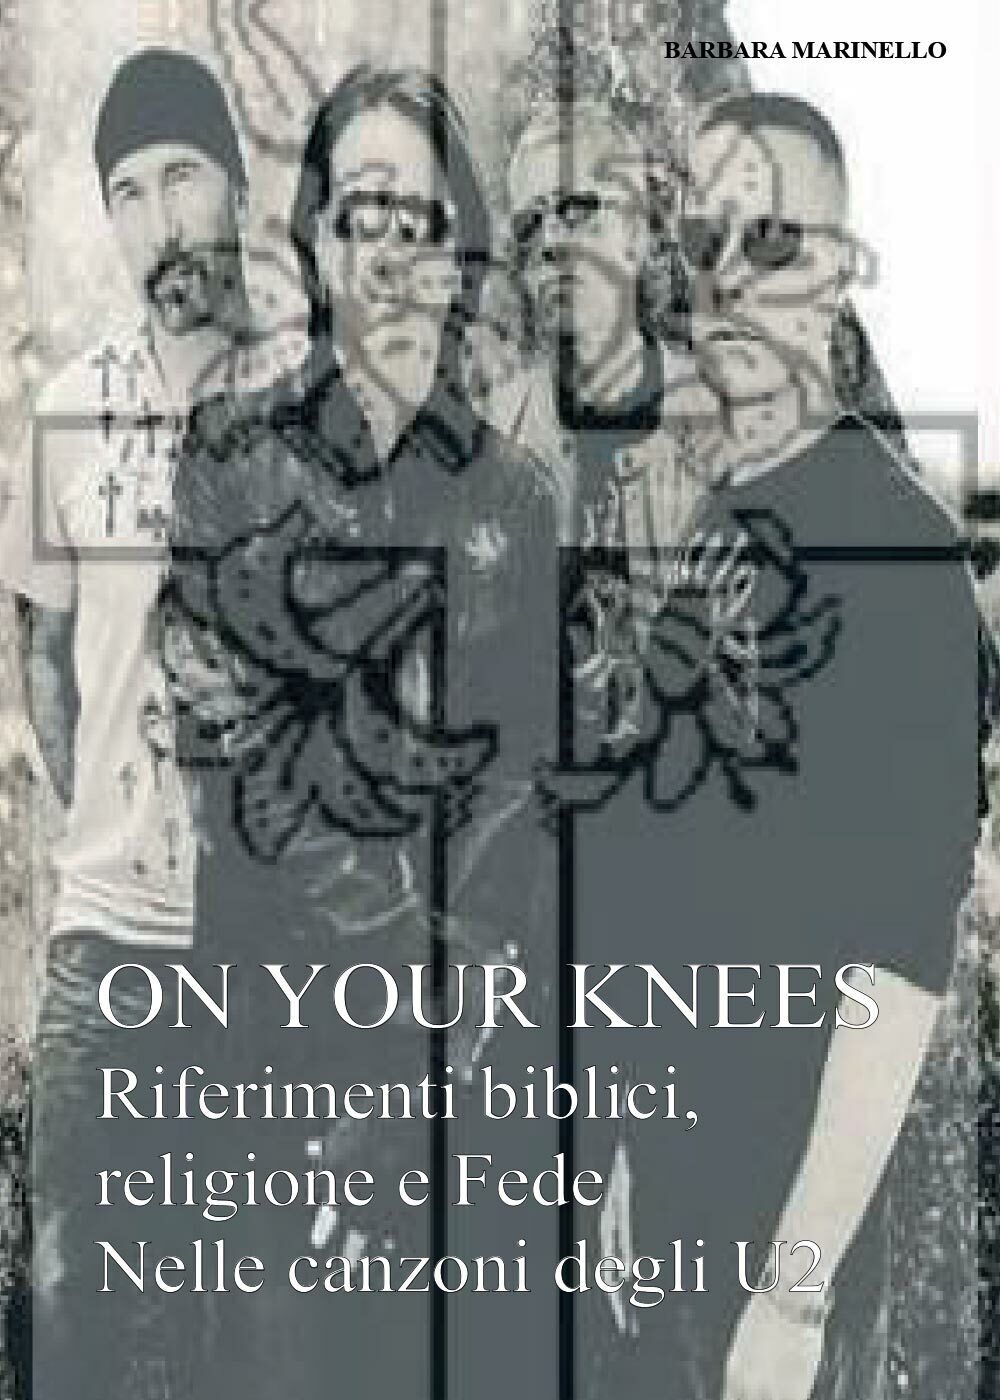 On your knees. Riferimenti biblici religione e fede nelle canzoni degli U2 di Ba